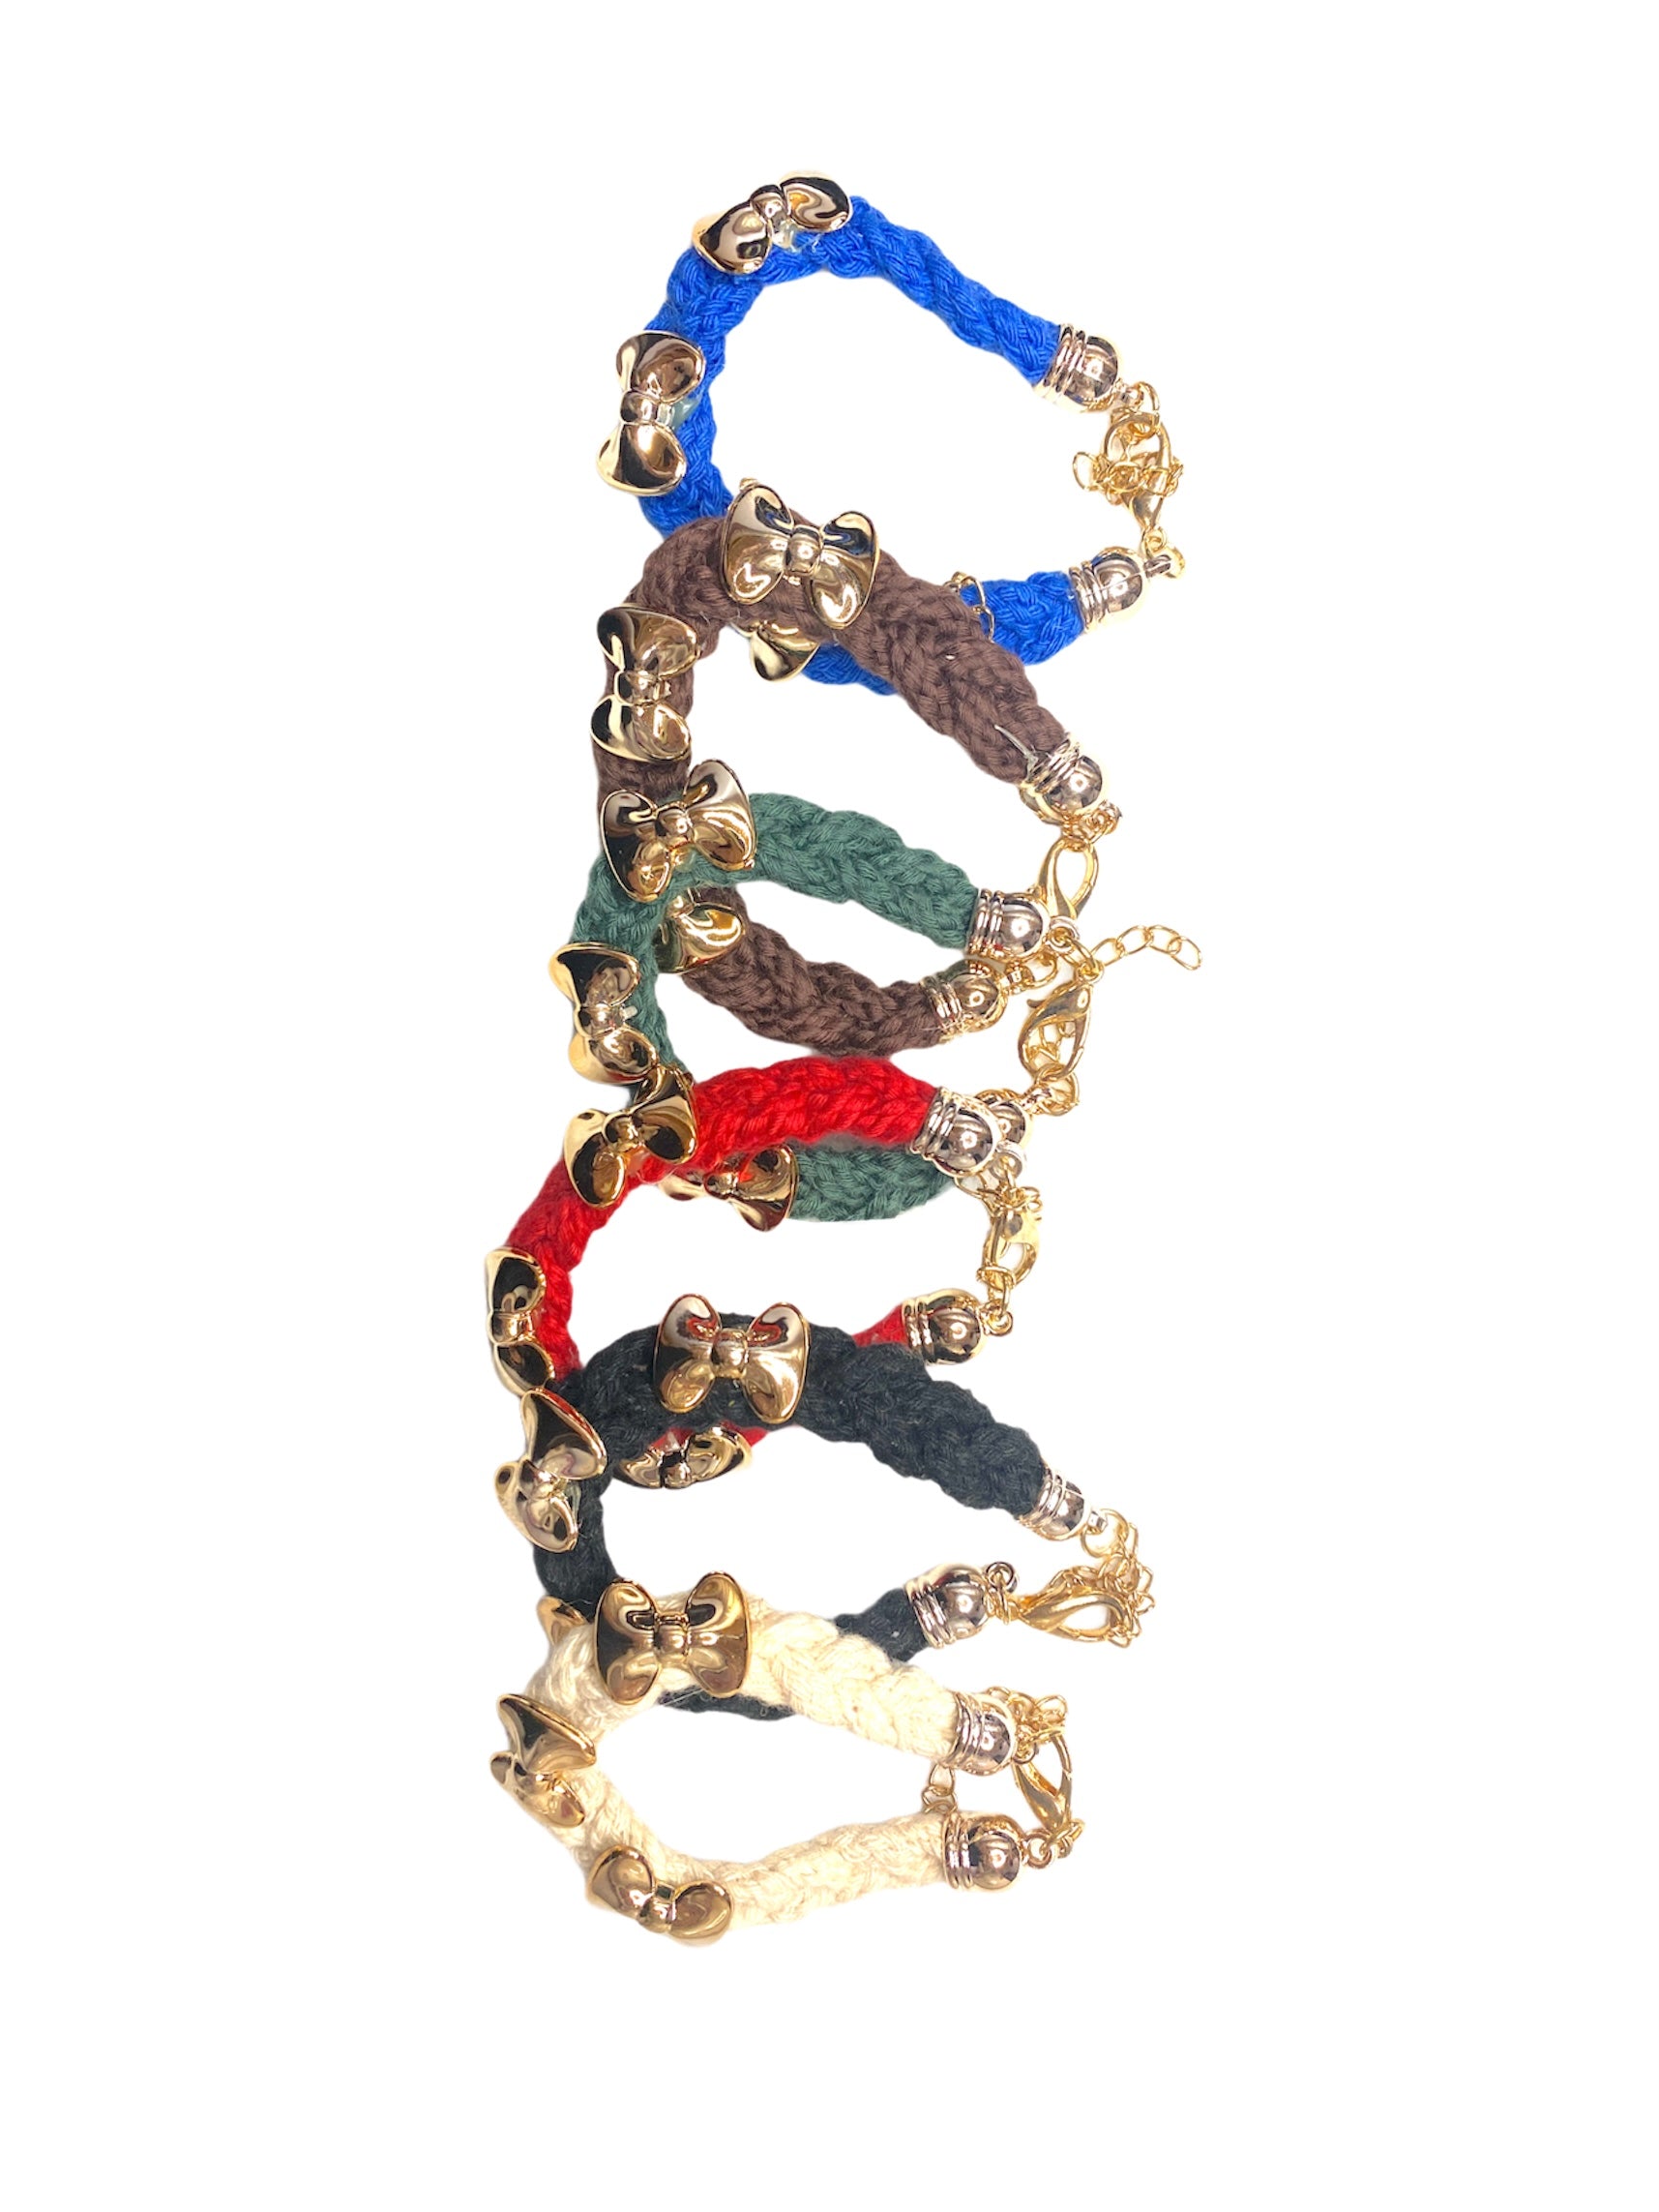 Bracelet tissu tresse noeud couleurs mélangées (x12)